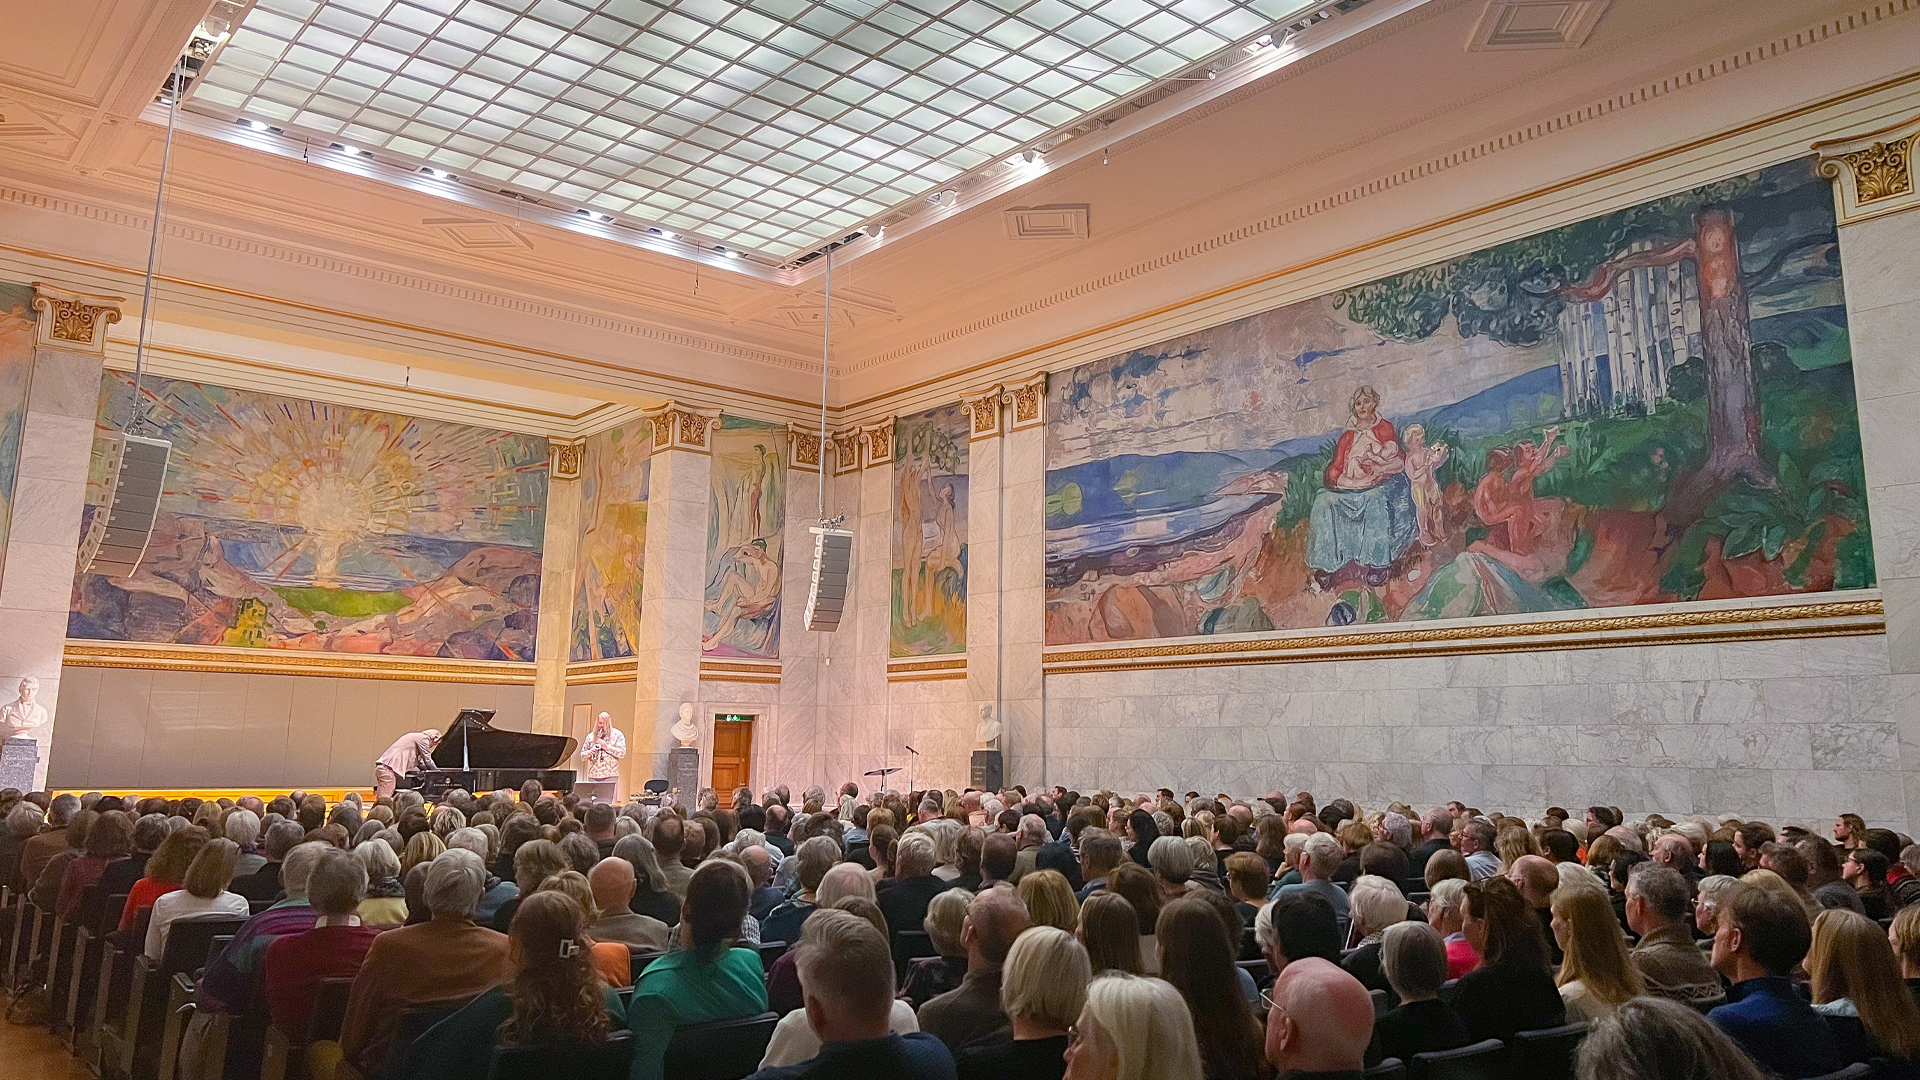 Universitetets aula er fullsatt, med publikum vendt mot scenen der en pianist og en gitarist spiller. I bakgrunnen ser vi Munchs malerier "Alma Mater" og "Solen".